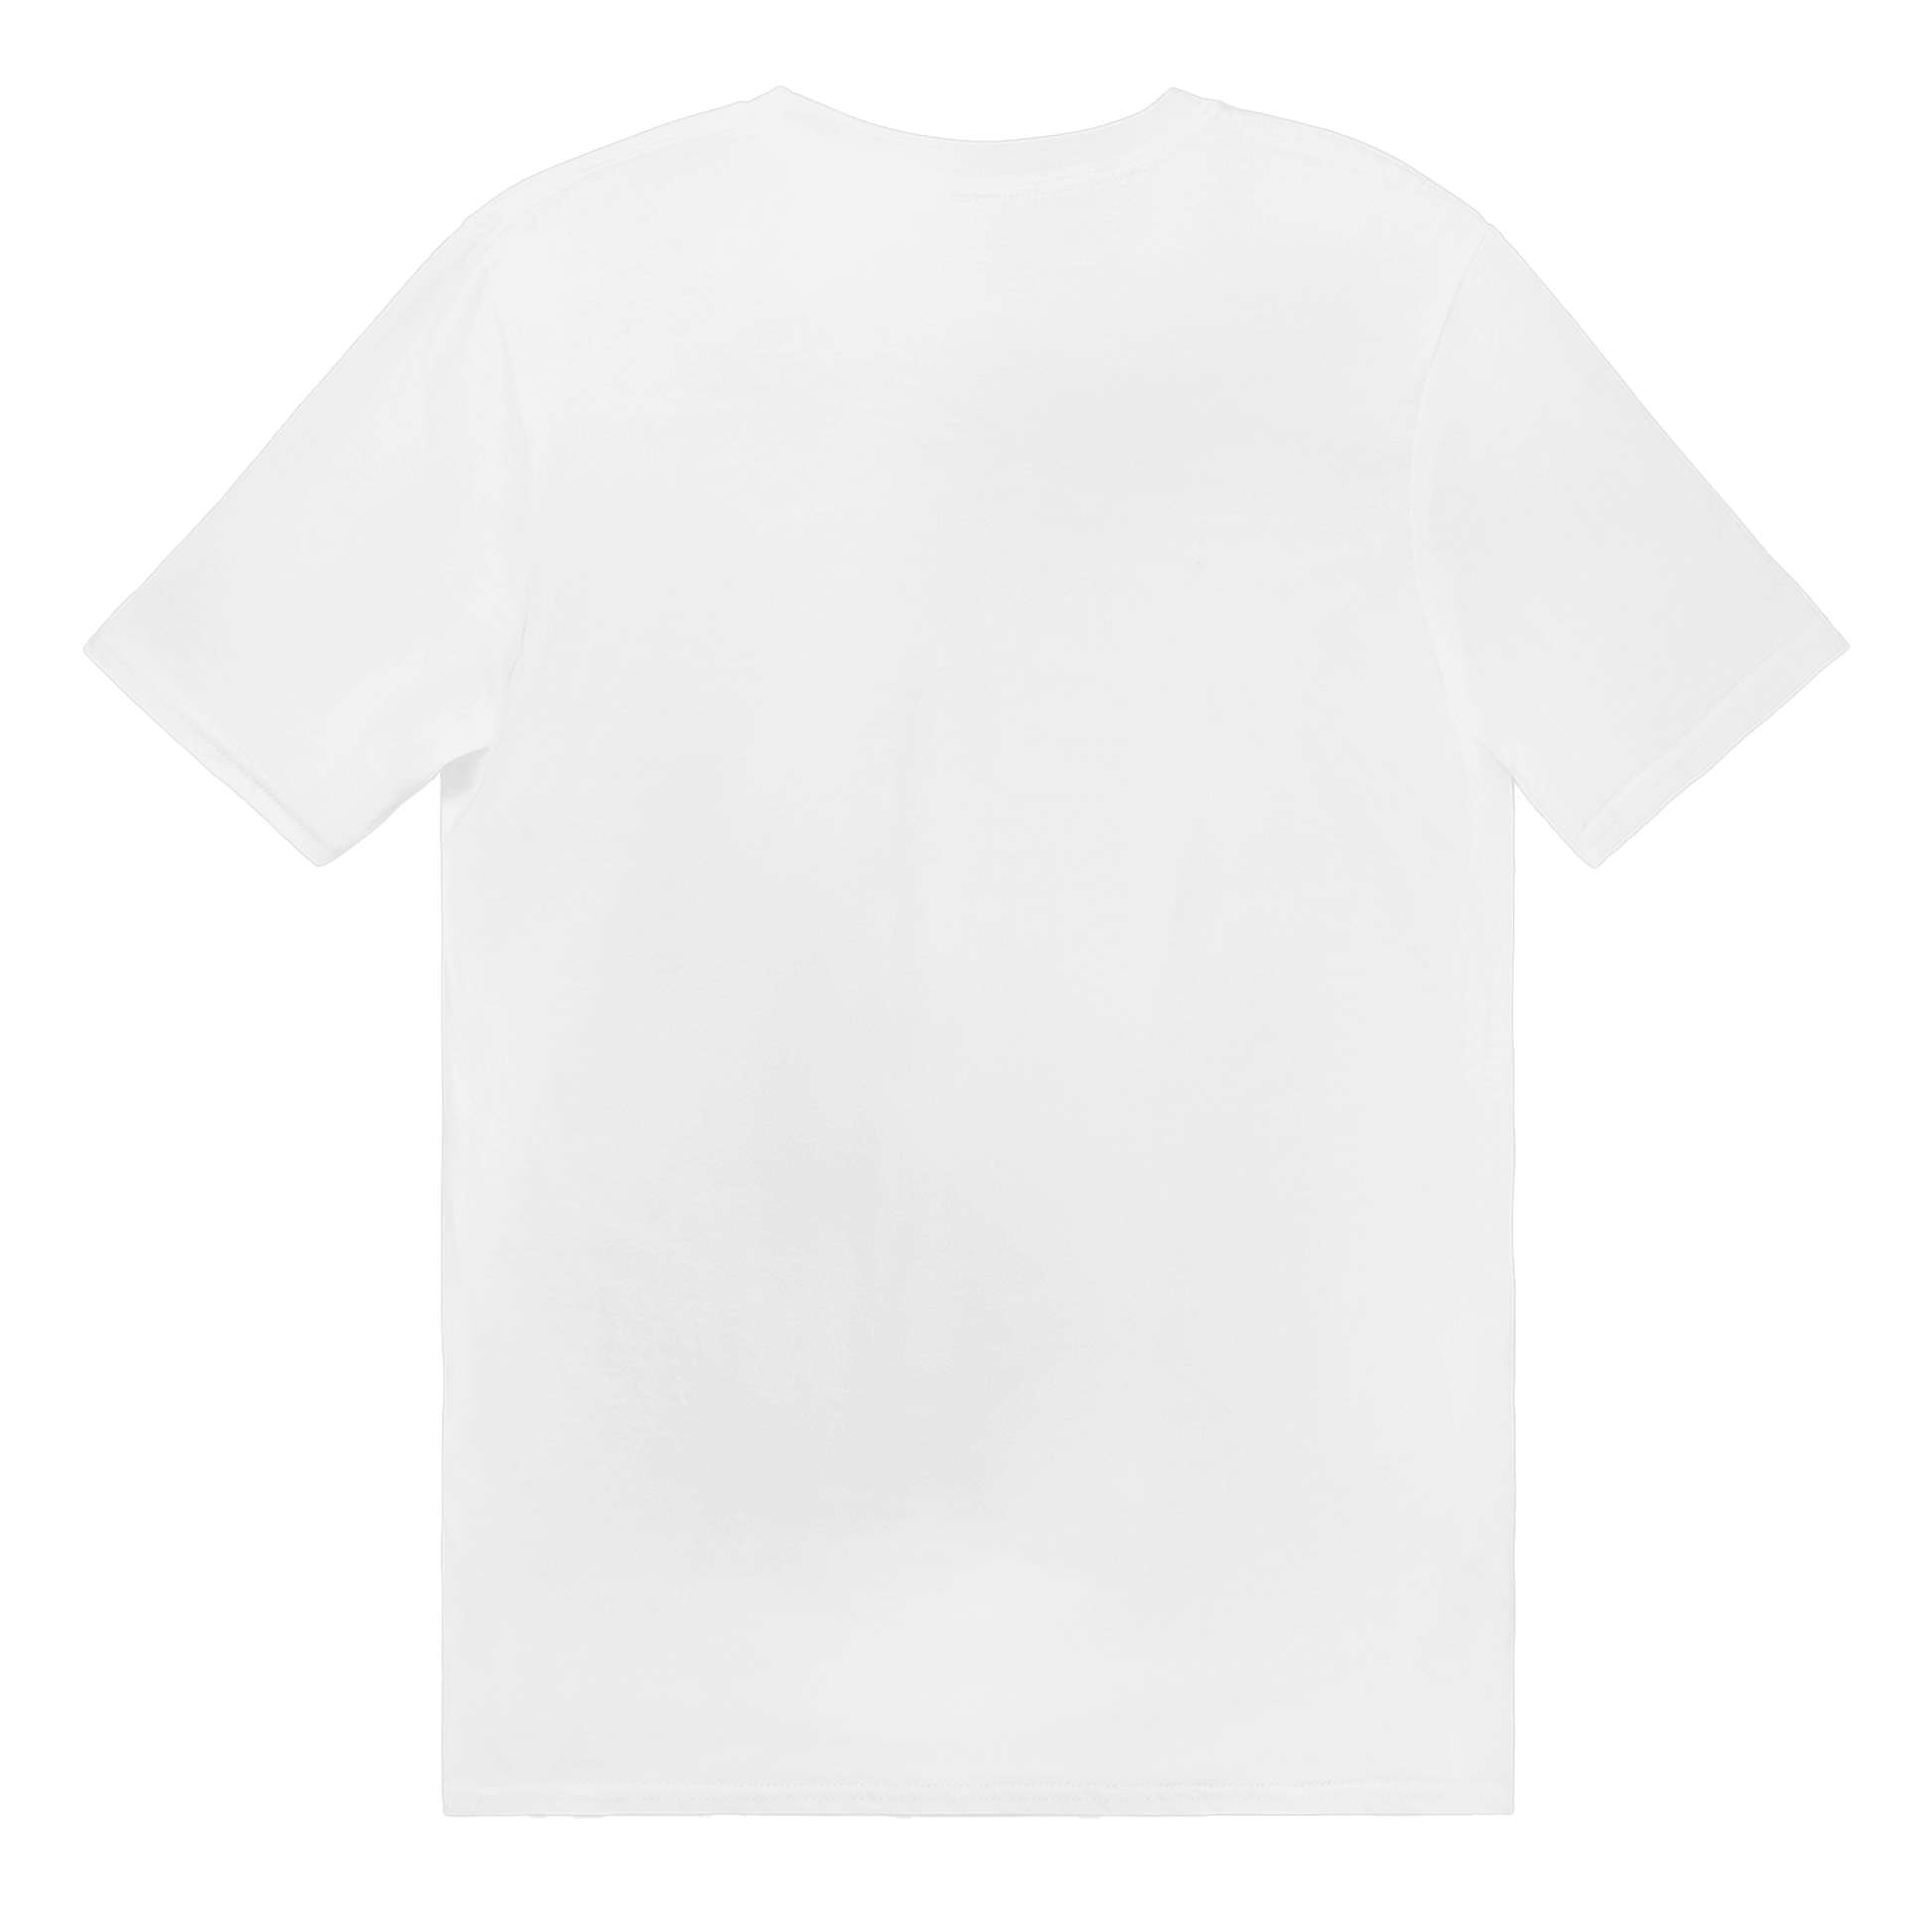 Långburk Fan Club liten - T-shirt 